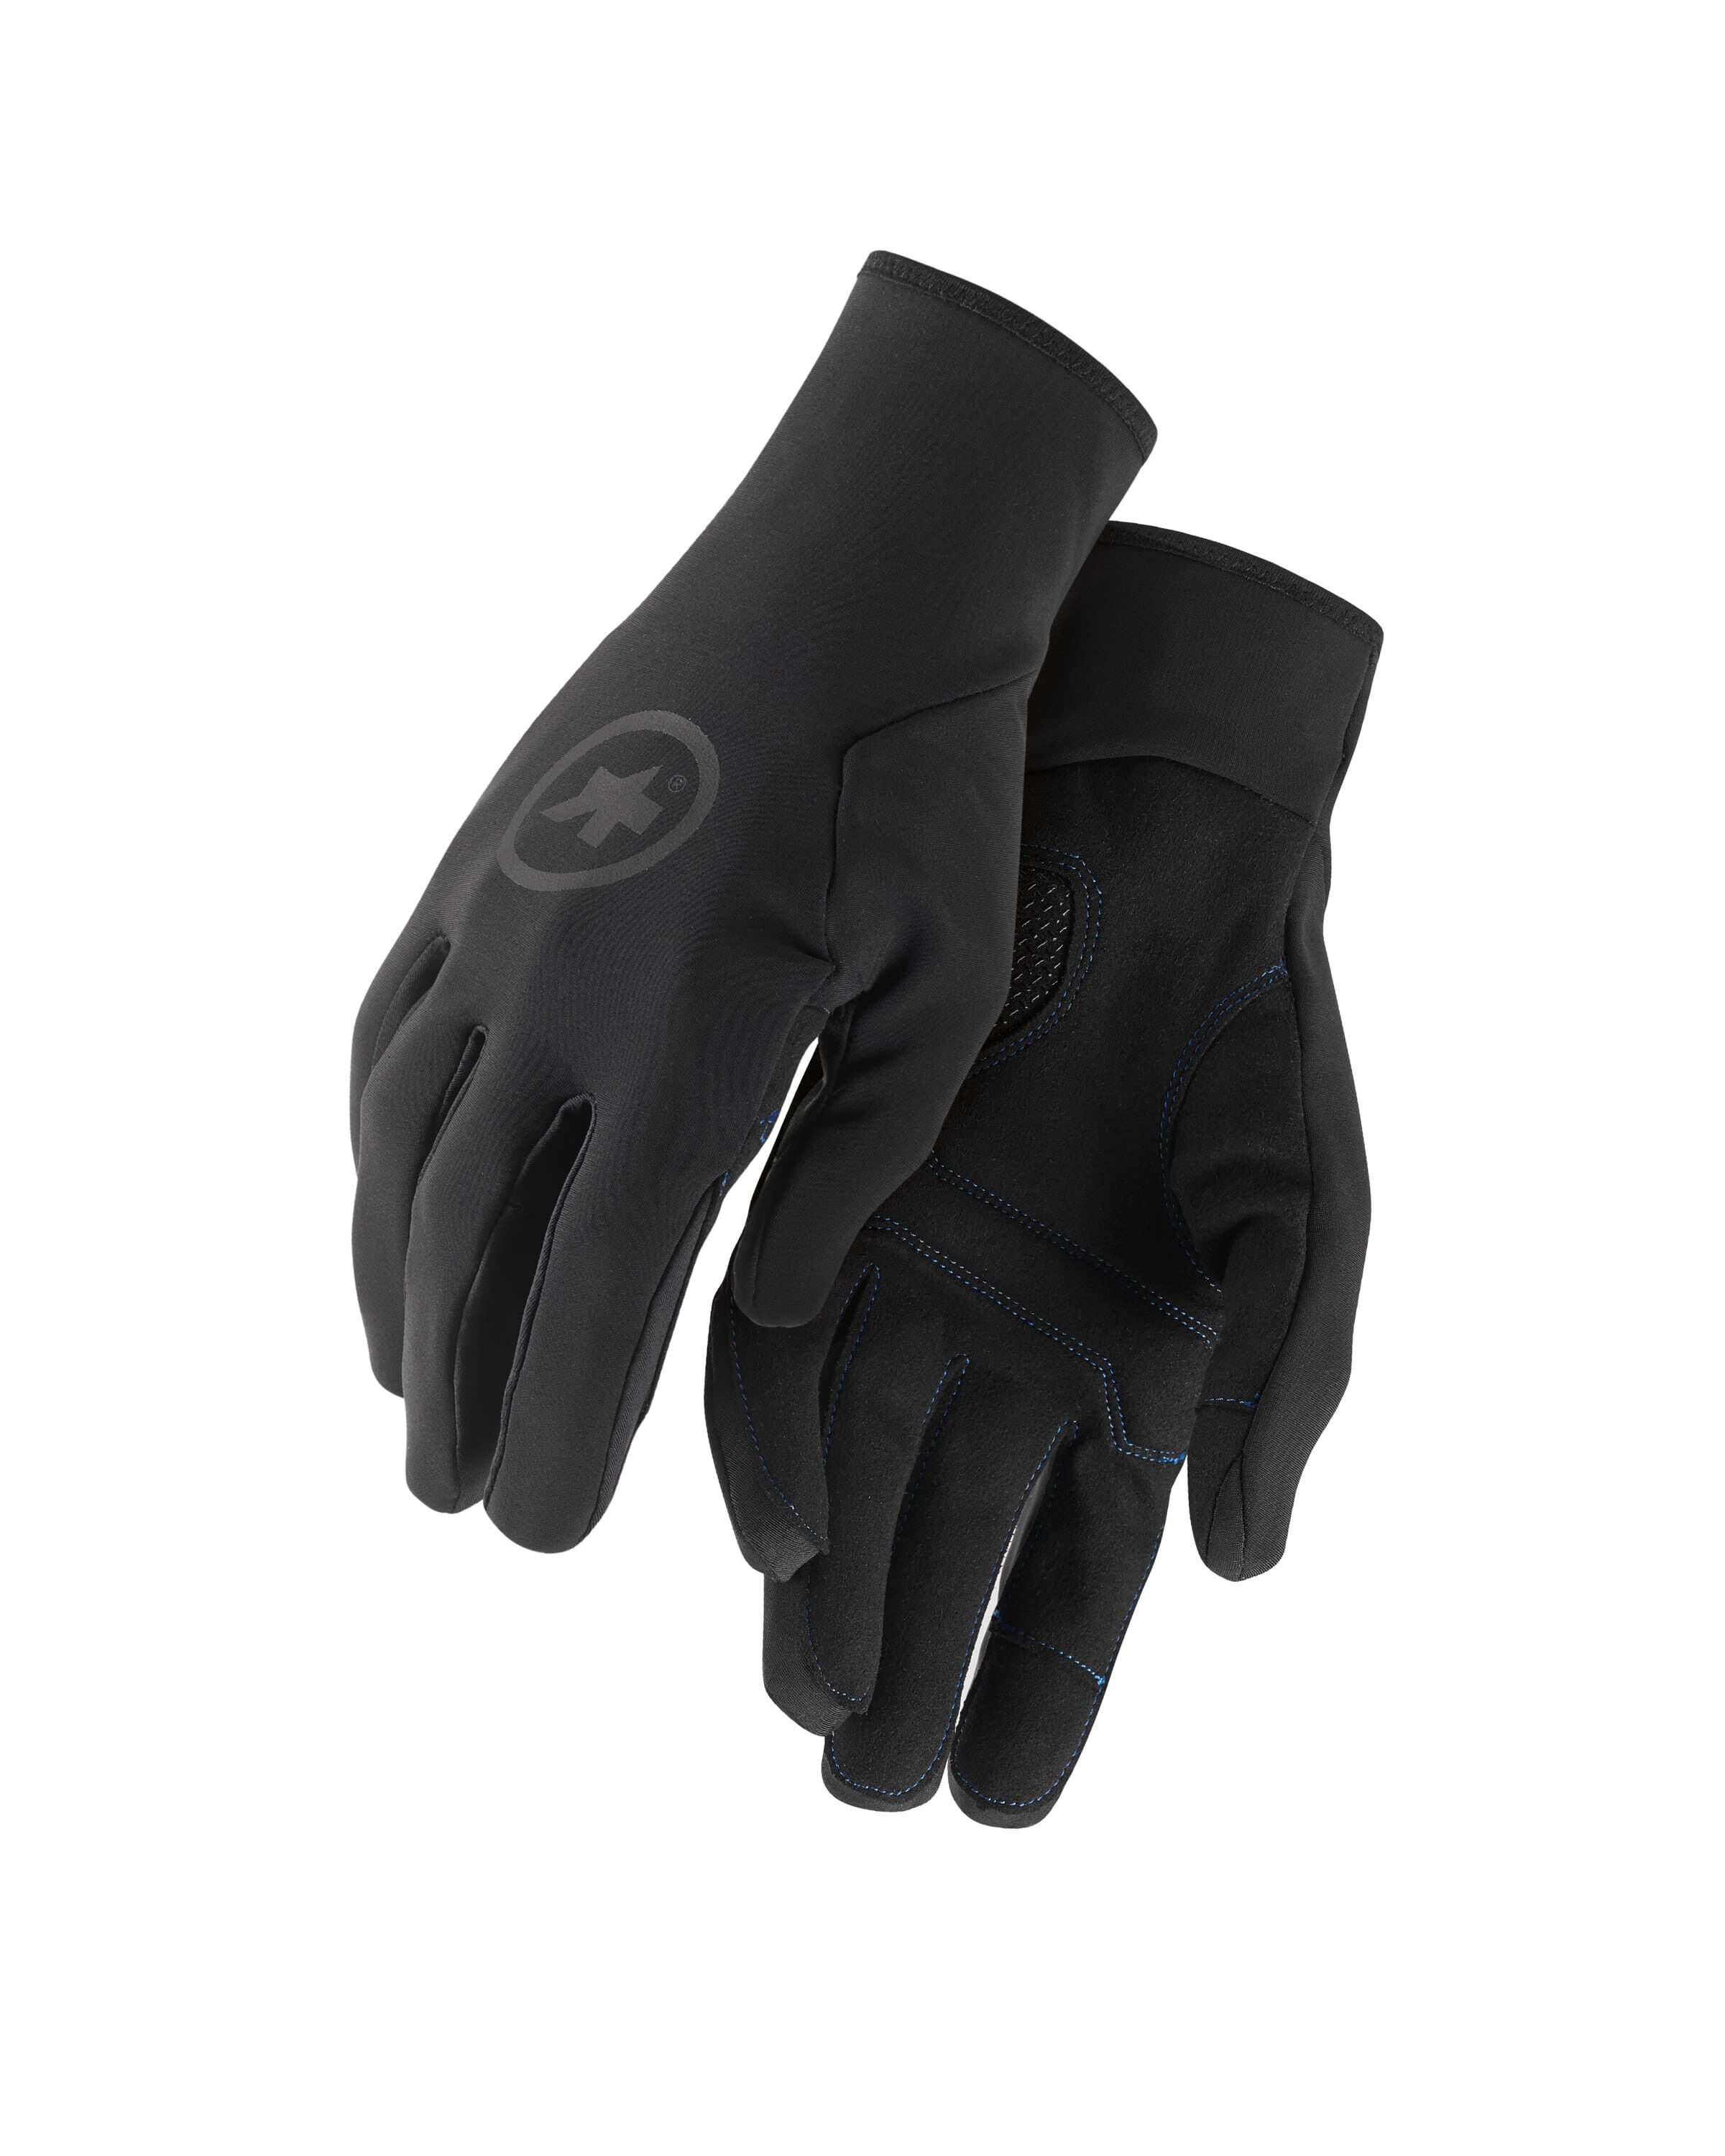 Assos Winter Gloves - Cykelhandskar